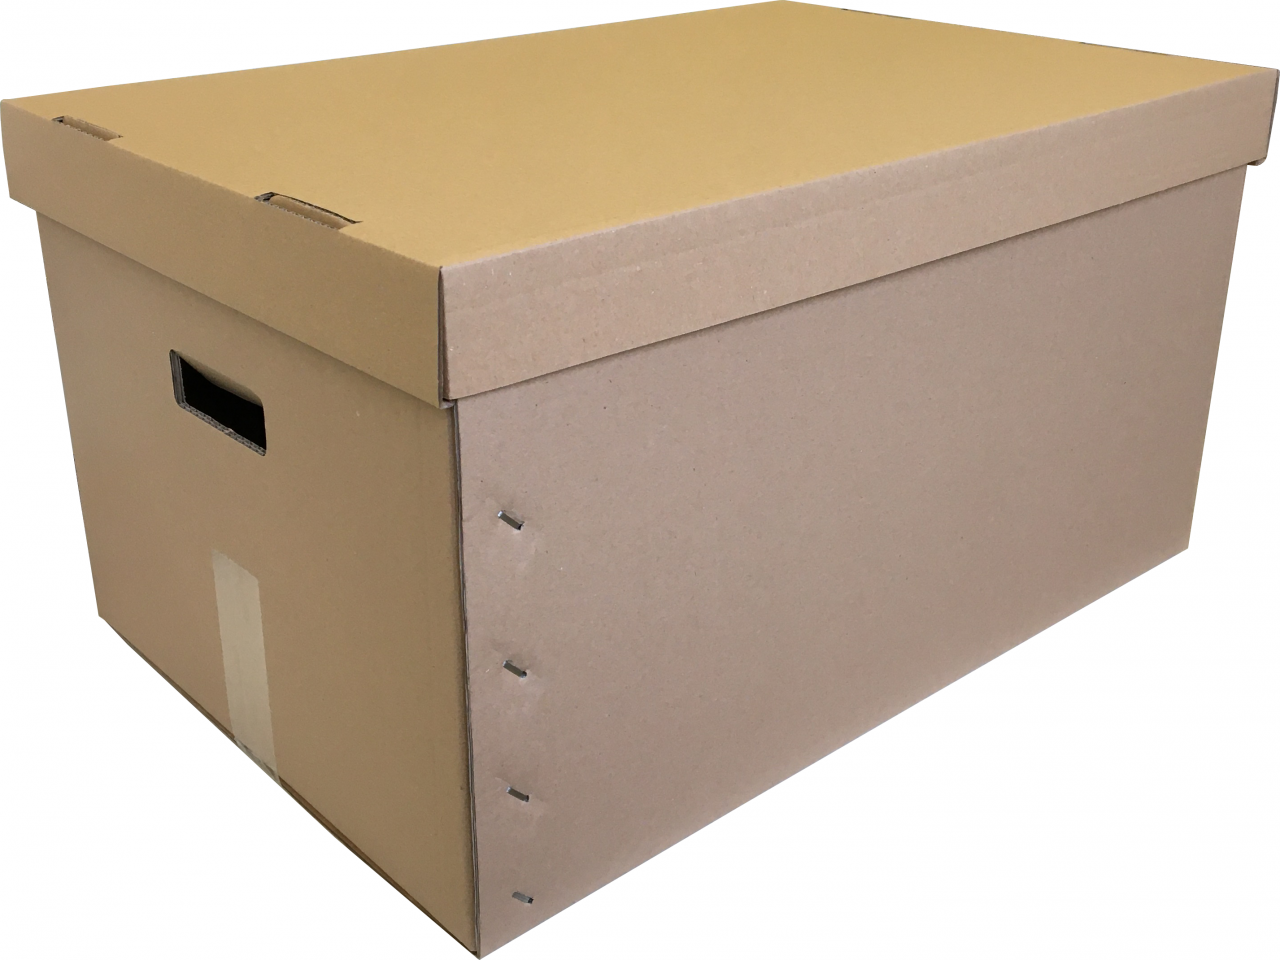 Fedeles Költöző doboz (575x381x300 mm) Fedeles Költöző doboz, praktikus külön álló felső résszel, hogy könnyedén meggyőződhessen tartalmáról.
Optimális méretben, hogy minél több fajta méretű, formájú értéke számára, biztonságos szállító illetve tároló eszköz legyen. Oldalán kézbenyúlással a könnyebb mozgatás érdekében.

Mérete: 
575x381x300 (mm)

Anyaga:
Hullámkarton, 5 rétegű alsórész, 3 rétegű felsőrész

Megjegyzés:
Alsó rész rögzítéséhez ragasztószalag szükséges.
